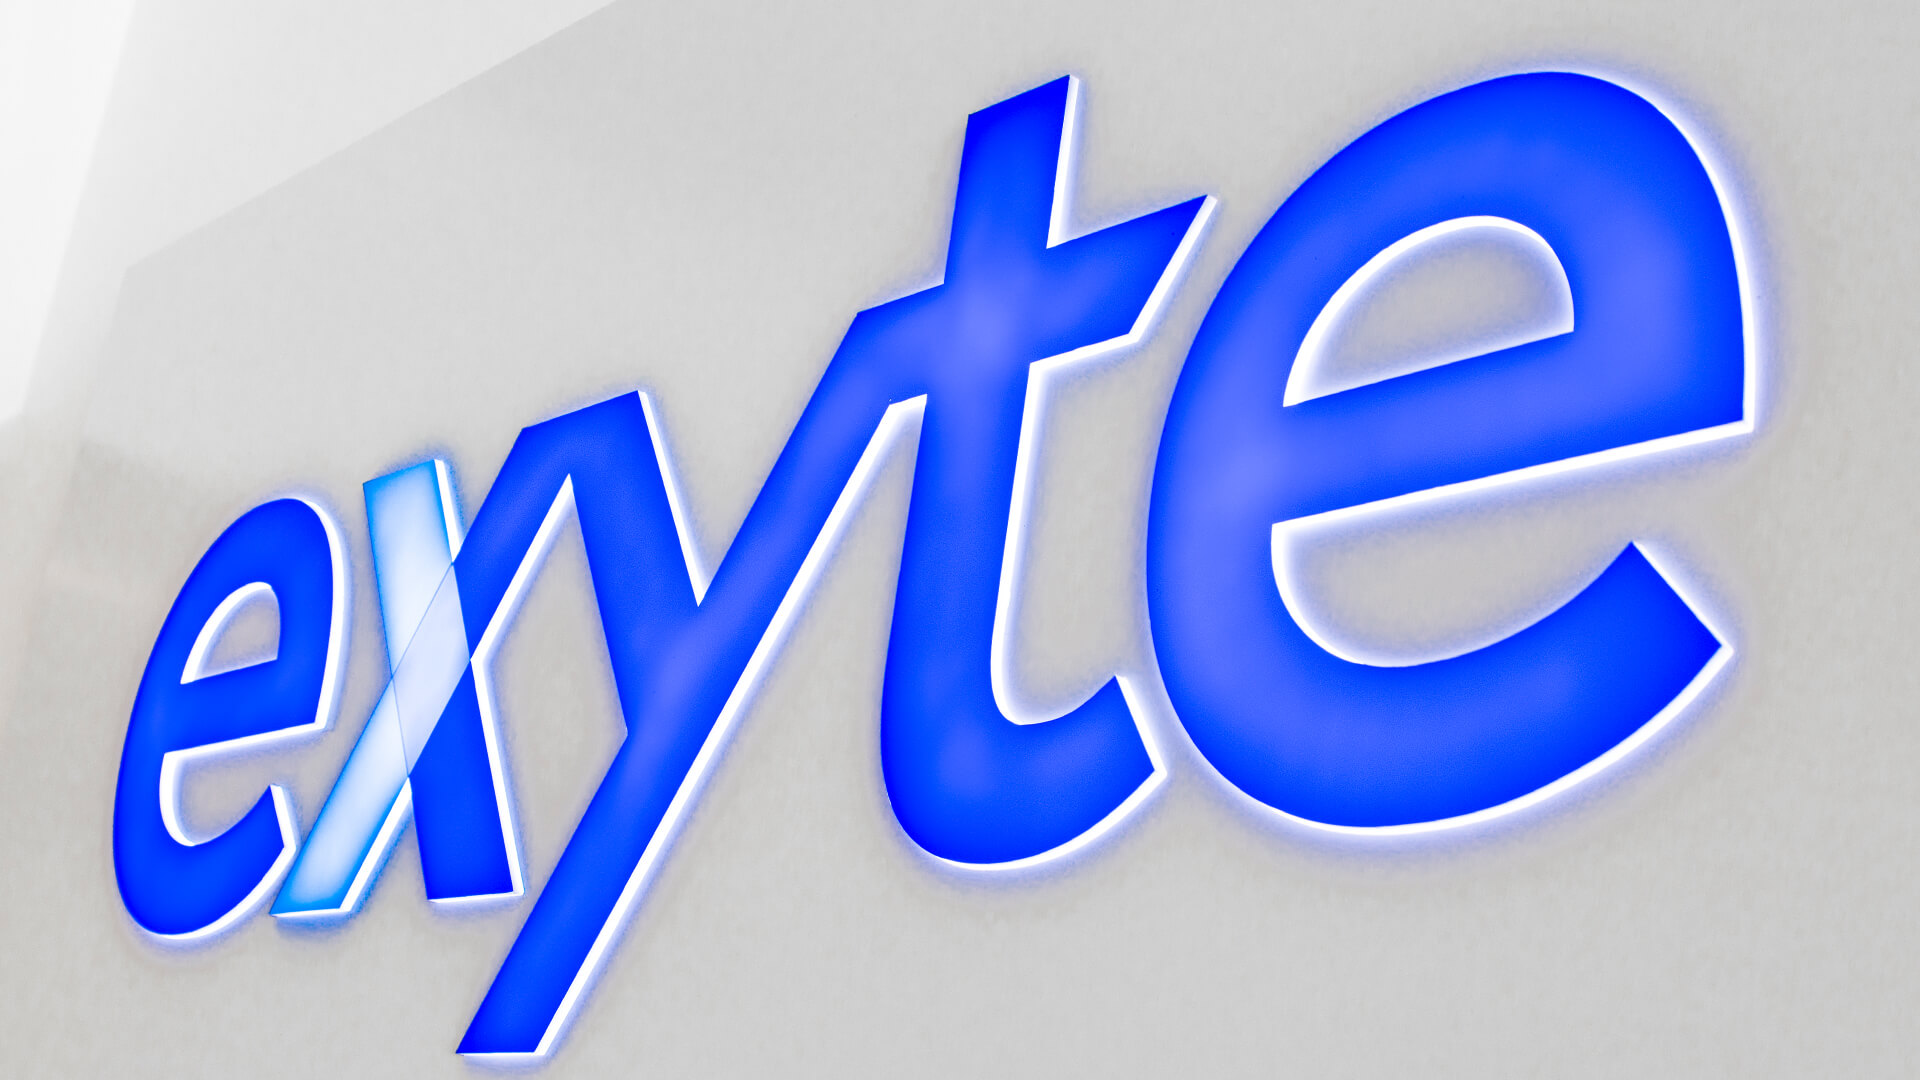 exyte exit - exyte-cashboard-op-de-wand-interieur-van-het-kantoor-achter-de-receptie-blauw-logo-back-lit-cashboard-voor-order-gdansk-park-technologisch-wetenschappelijk